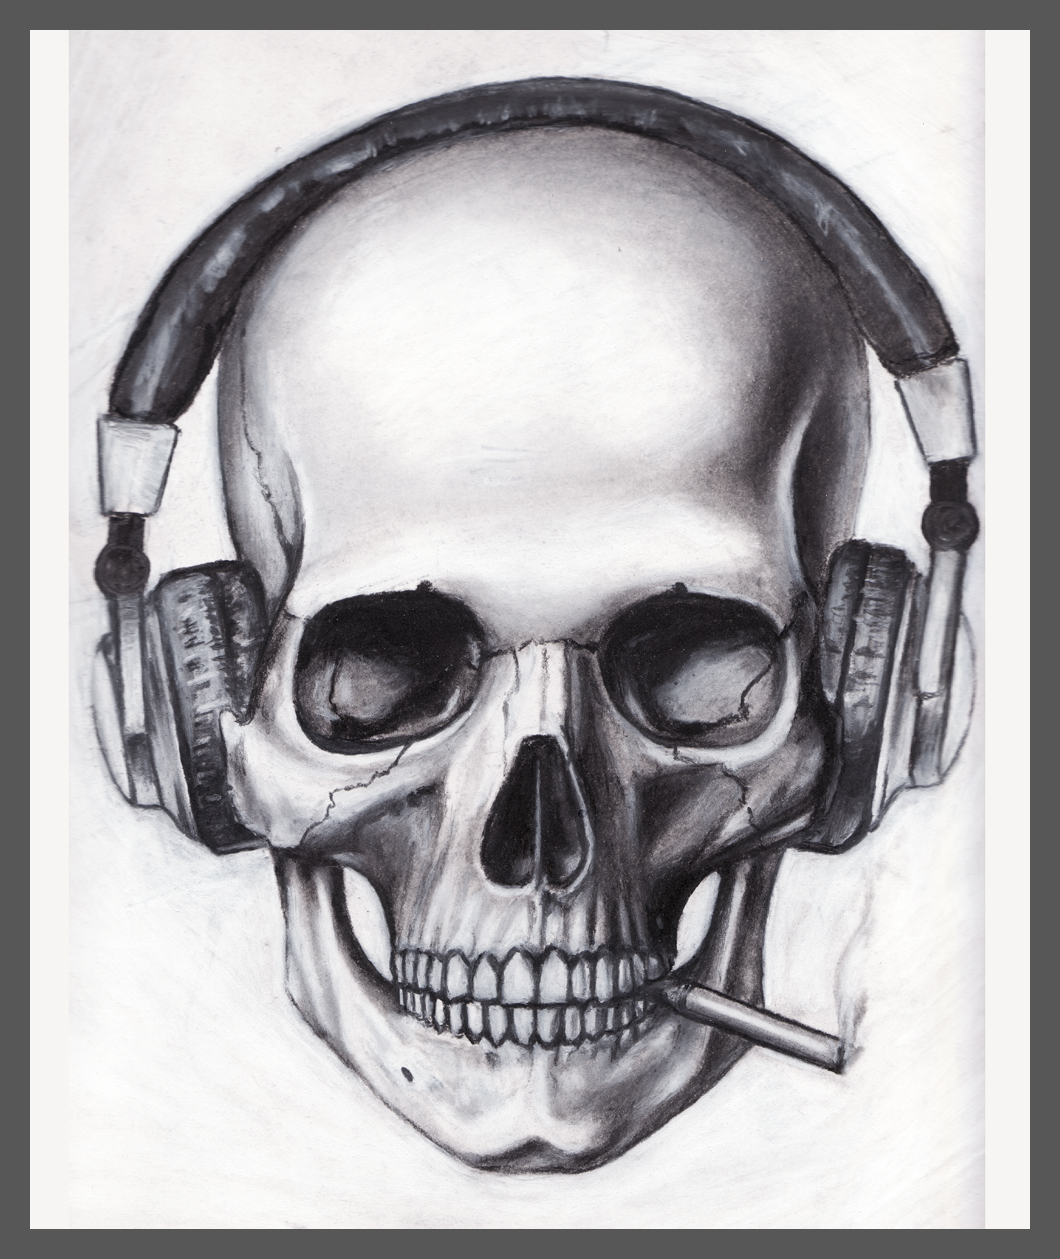 Skull Headphones Cigarette by pleasenojunkthanks on Clipart library